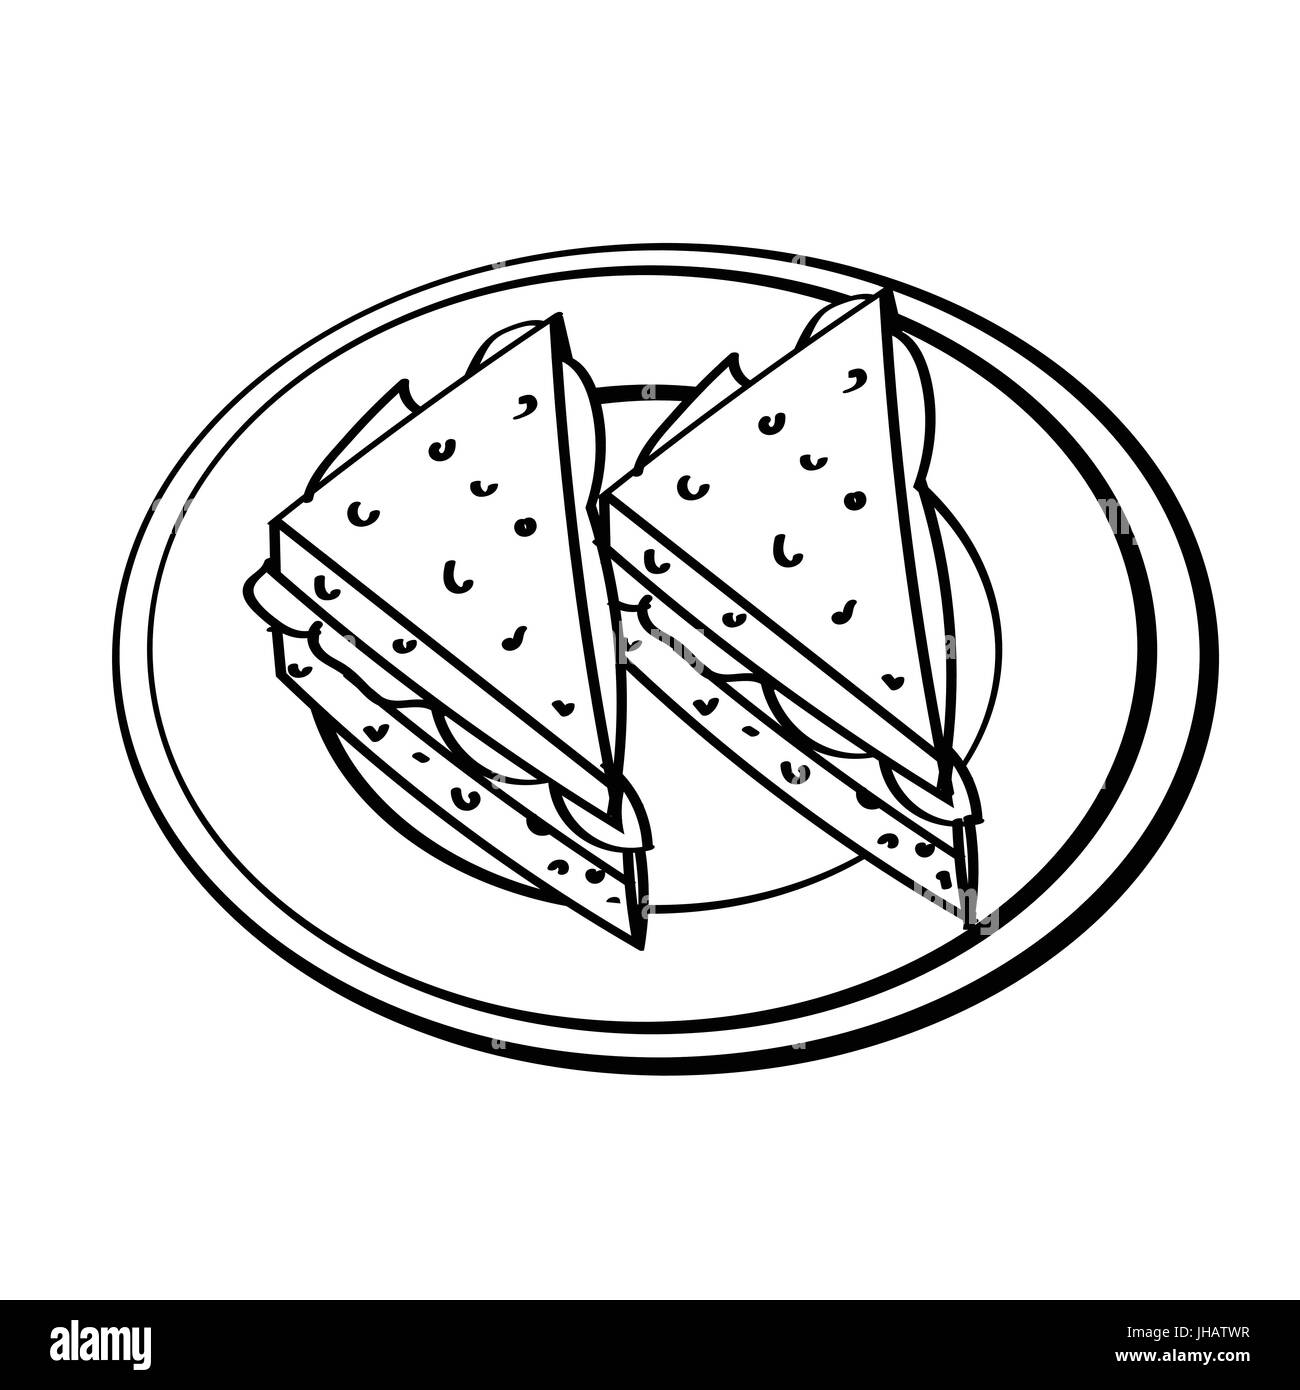 Croquis dessinés à la main, de sandwichs dans plat isolé, noir et blanc Cartoon Vector Illustration pour livre de coloriage - Ligne dessinée Vector Illustration de Vecteur